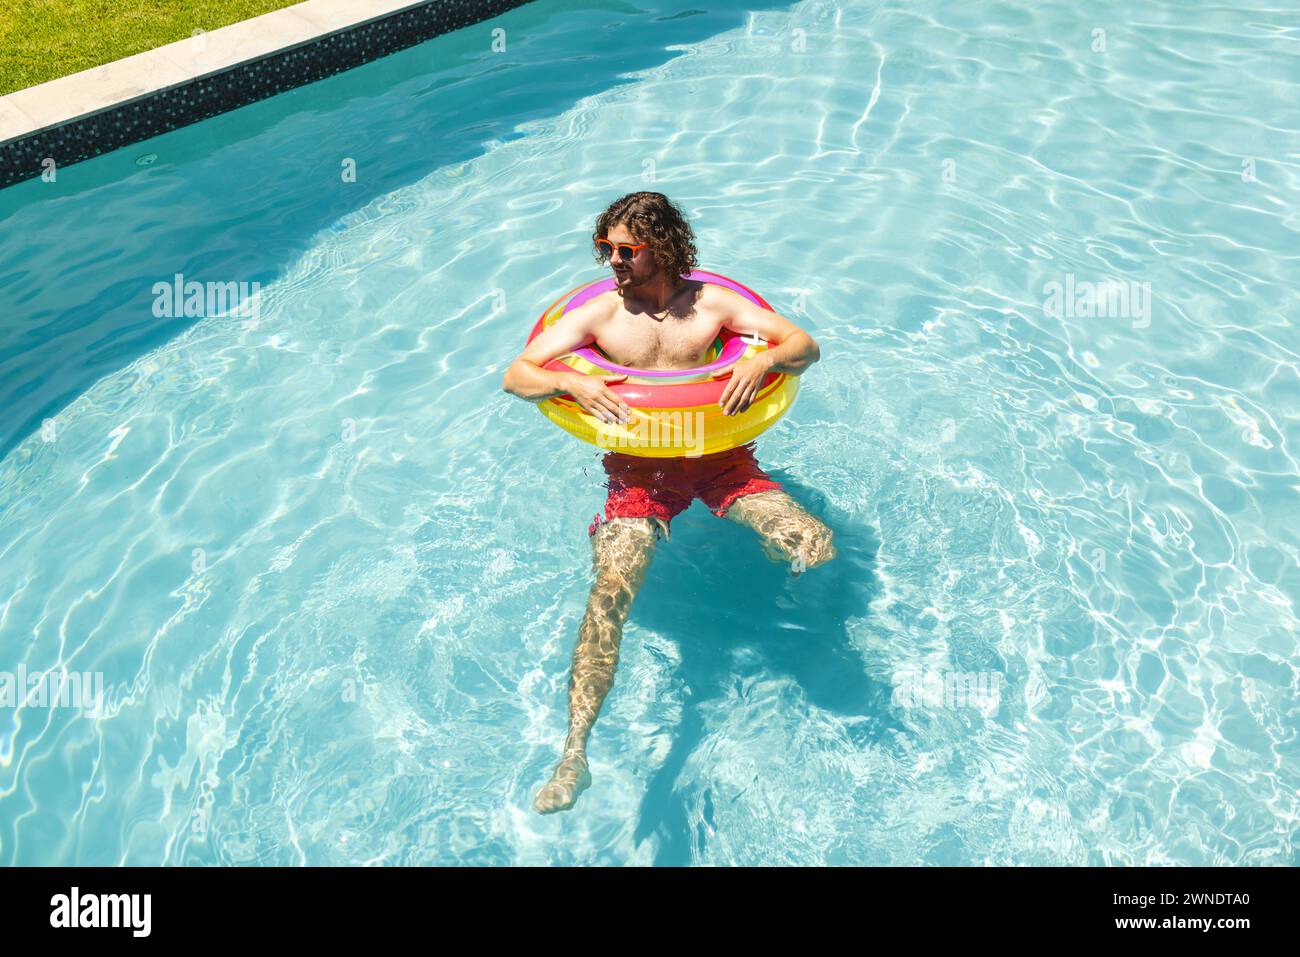 Junger Kaukasier schwimmt in einem Pool mit einem bunten Ring, trägt Sonnenbrille und rote Shorts Stockfoto